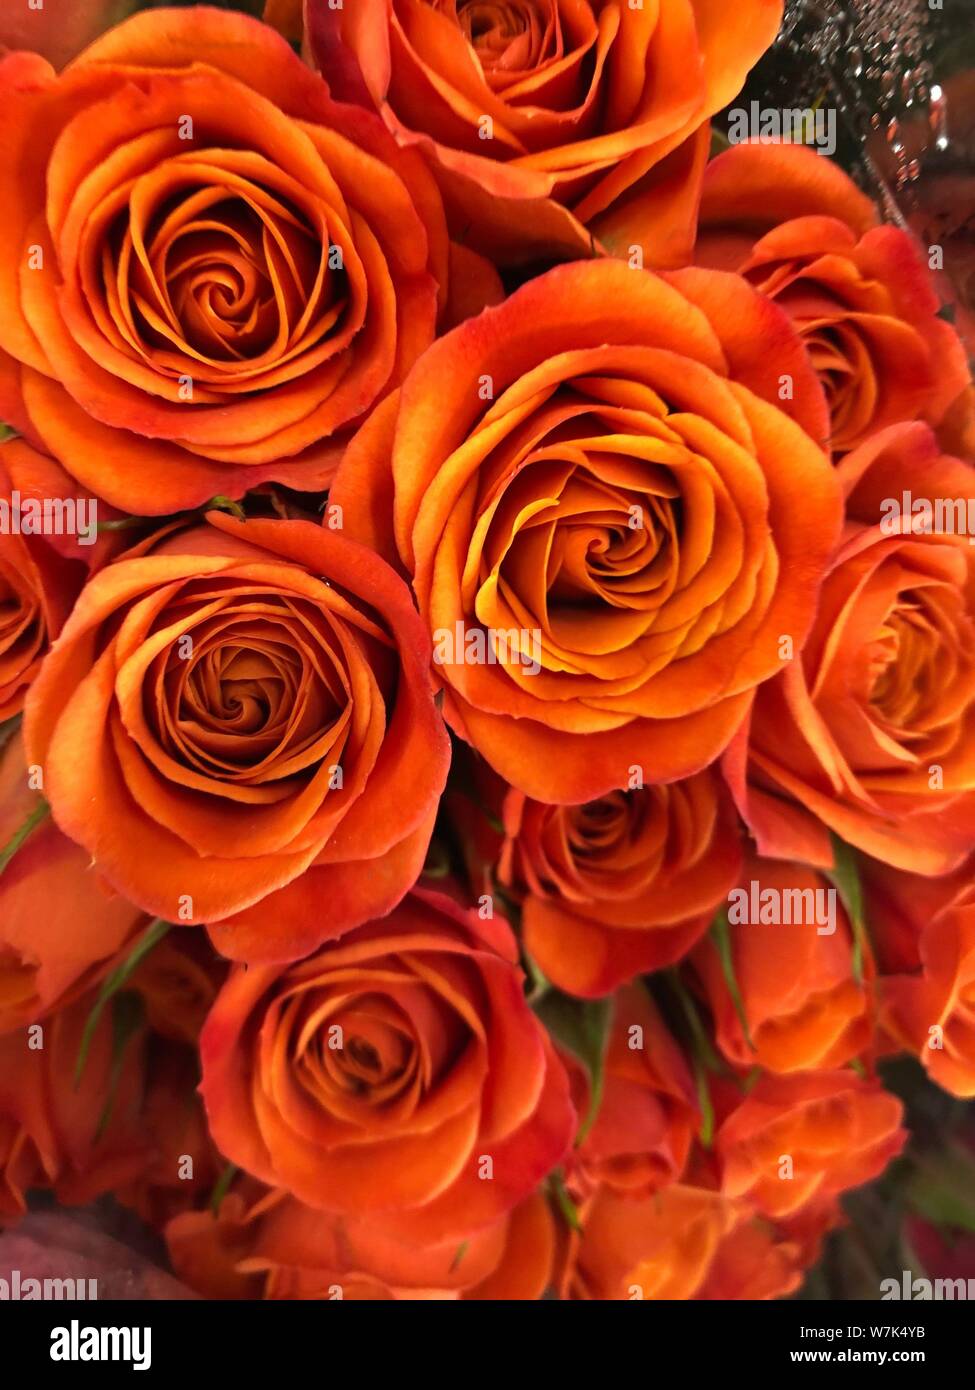 Orange Rosen Hintergrund schön Blumen wallpaper Bild beschneiden für Design Stockfoto